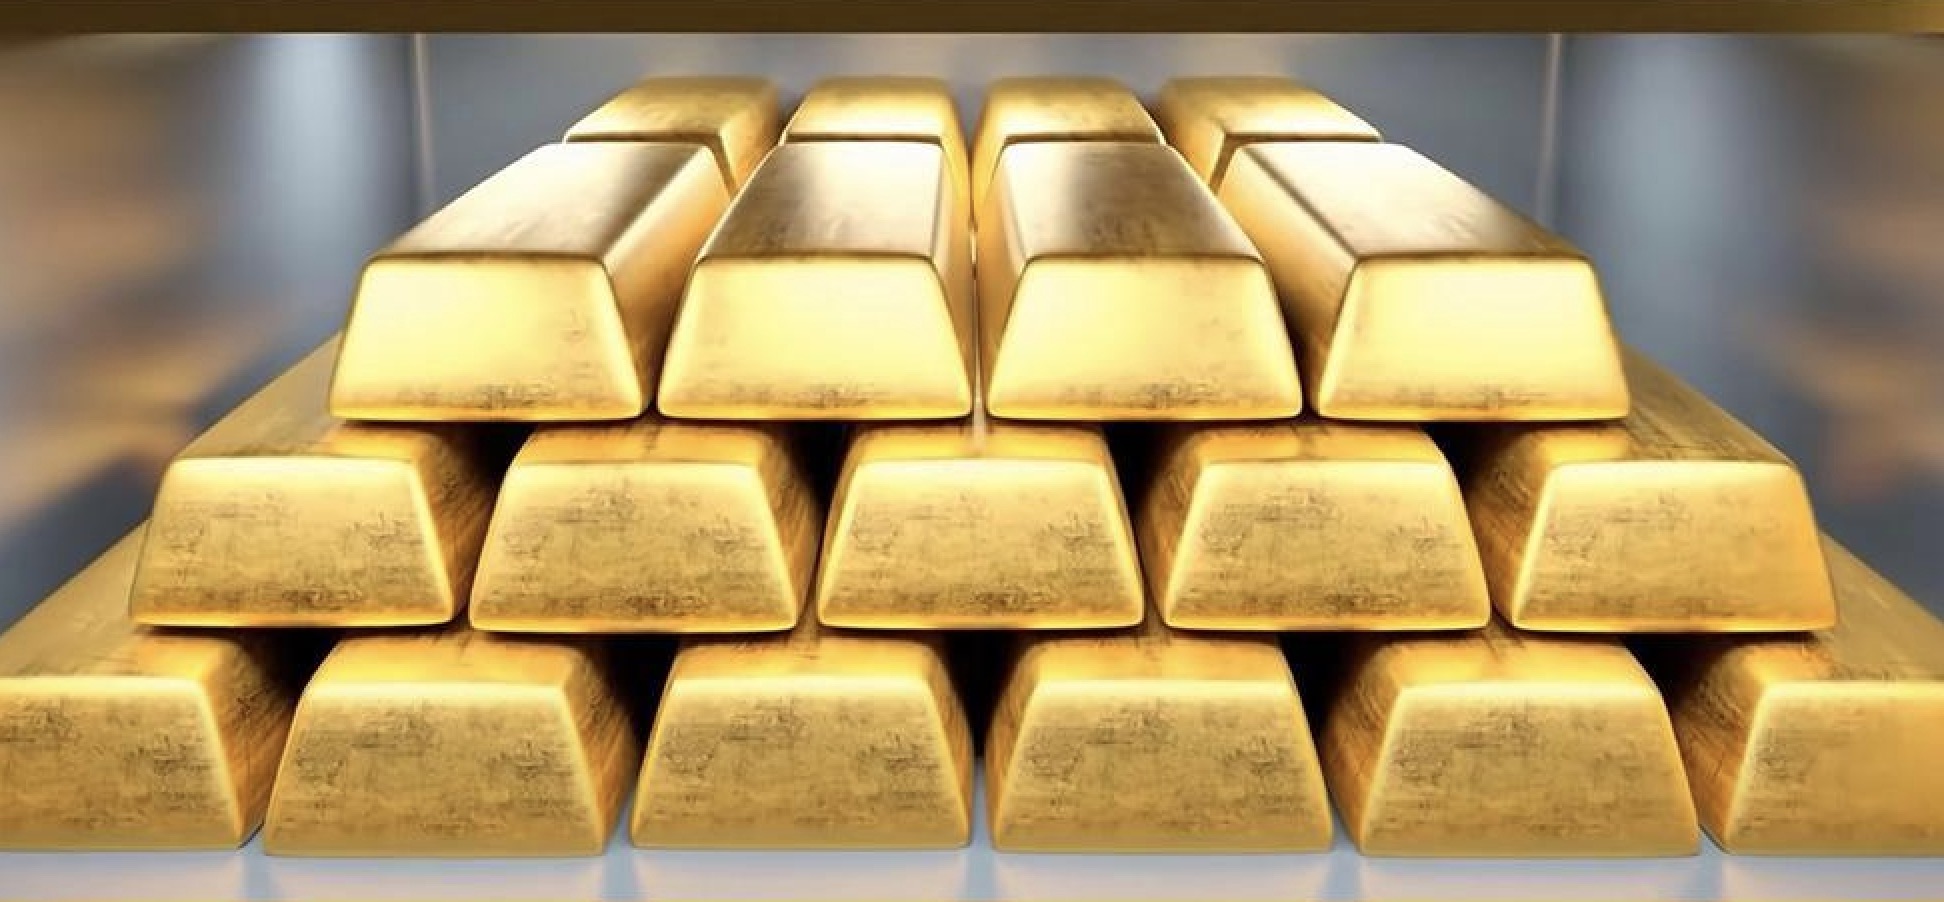 Prospek pasar emas: Pasar mencari panduan dari Federal Reserve mengenai penurunan suku bunga minggu ini.Harga emas akan sulit untuk naik secara signifikan dalam jangka pendek.